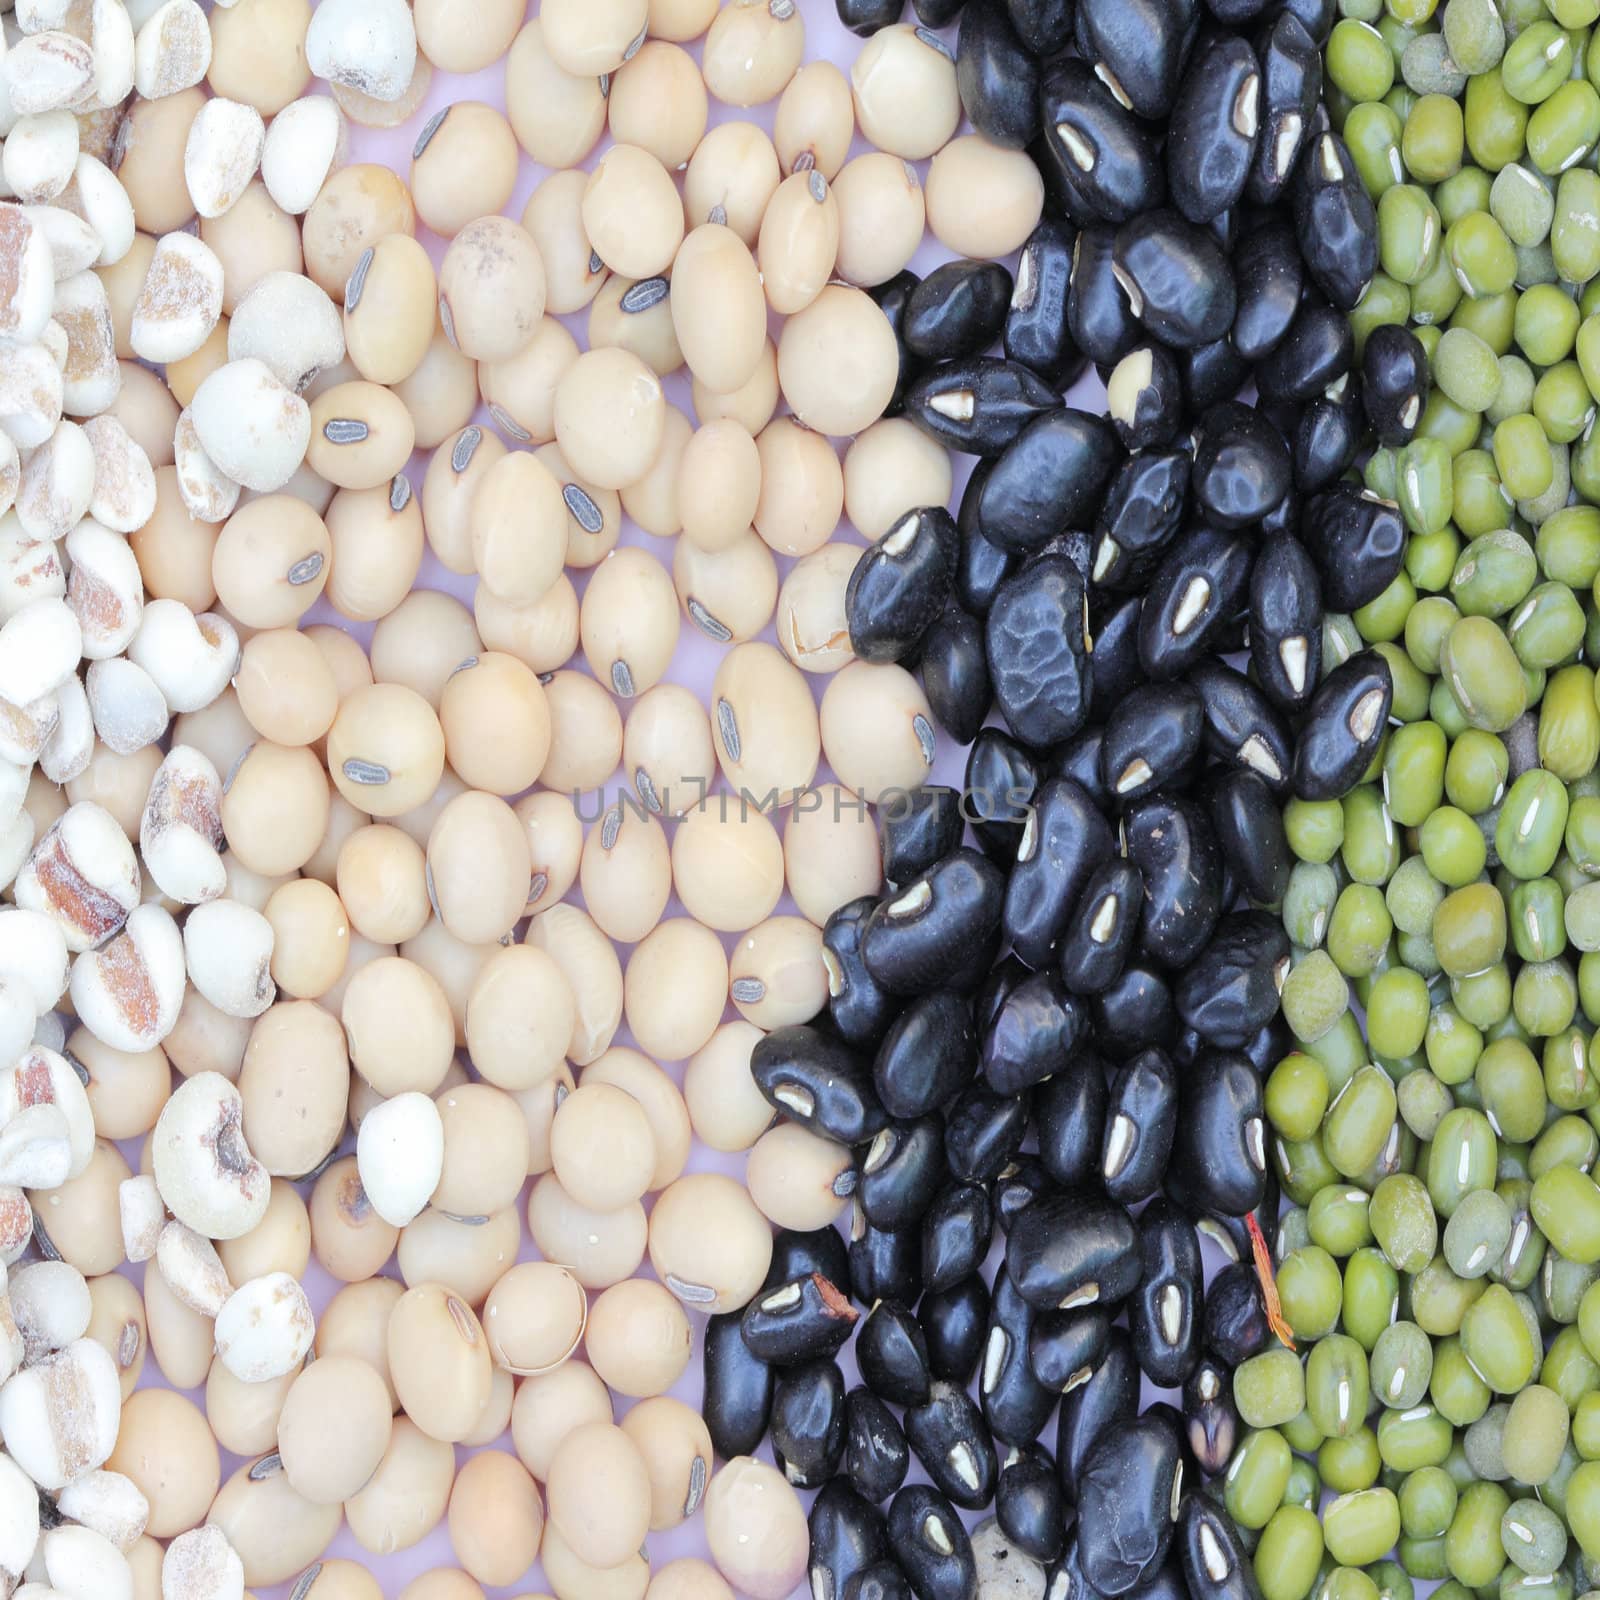 Varieties of bean by wyoosumran